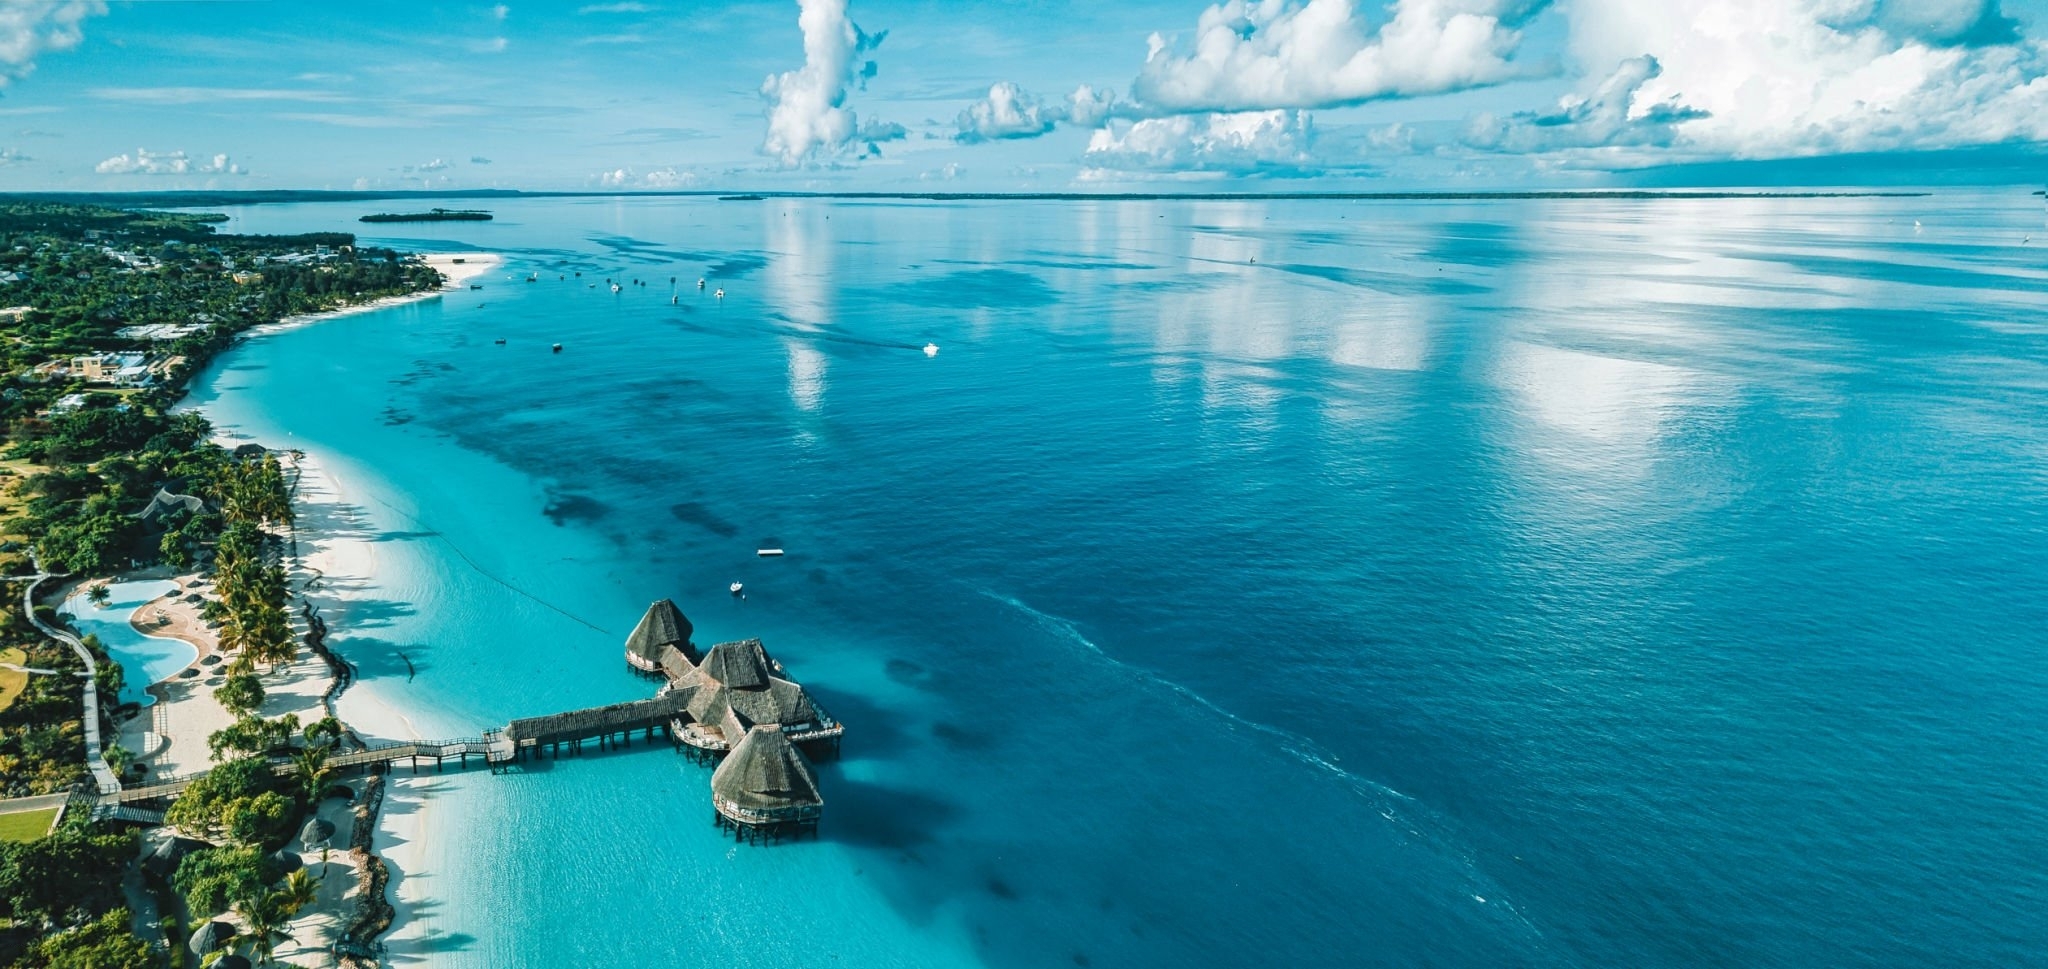 Tendências no turismo: 5 destinos internacionais para conhecer em 2023 | Zanzibar | Conexão123